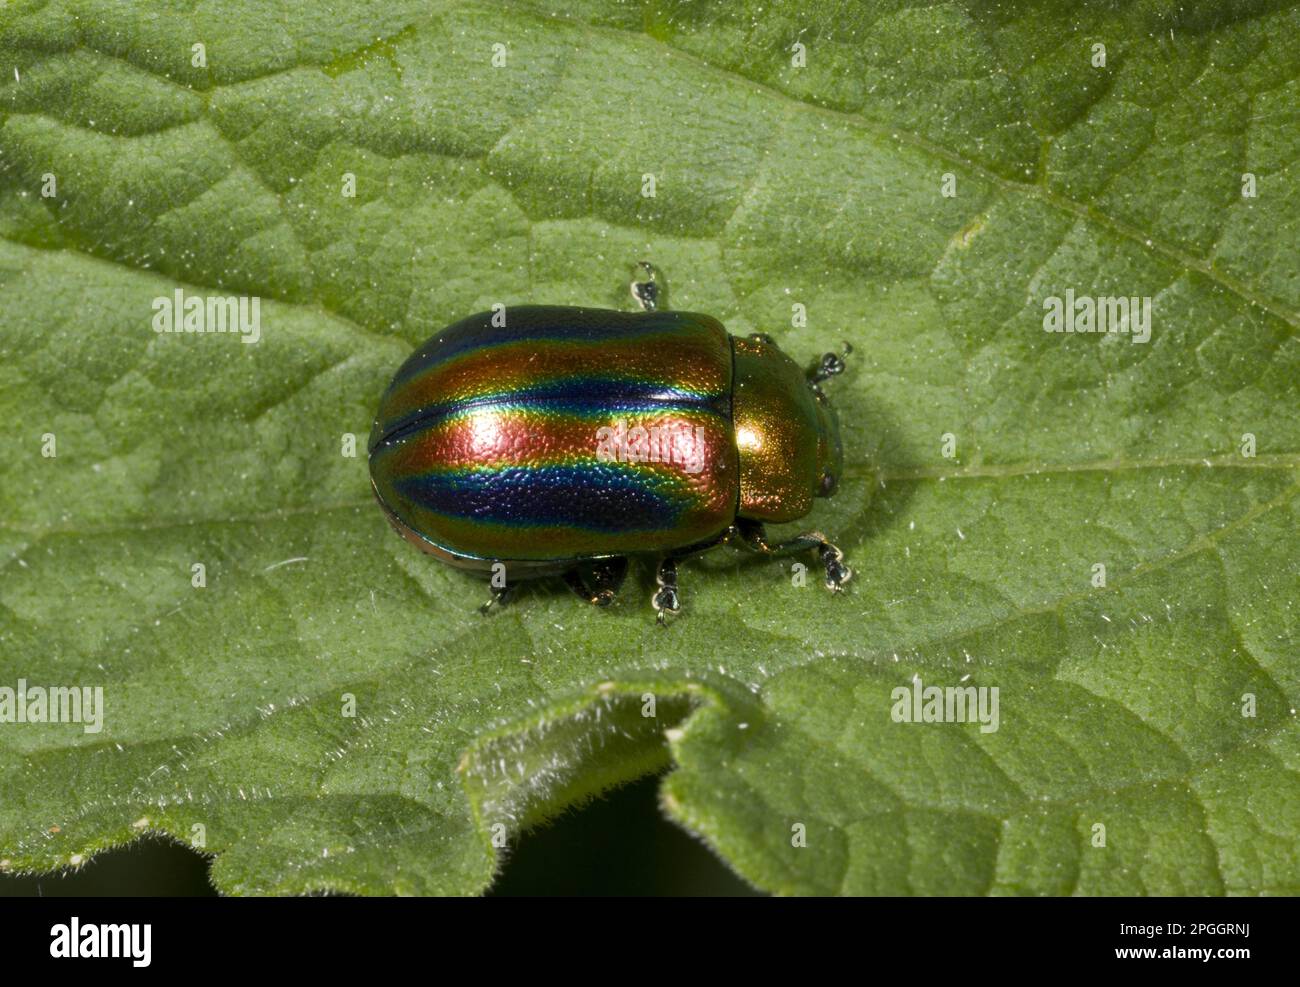 Rainbow Leaf Beetle (Chrysolina cerealis) adulte, reposant sur la feuille, Pyrénées françaises, France Banque D'Images